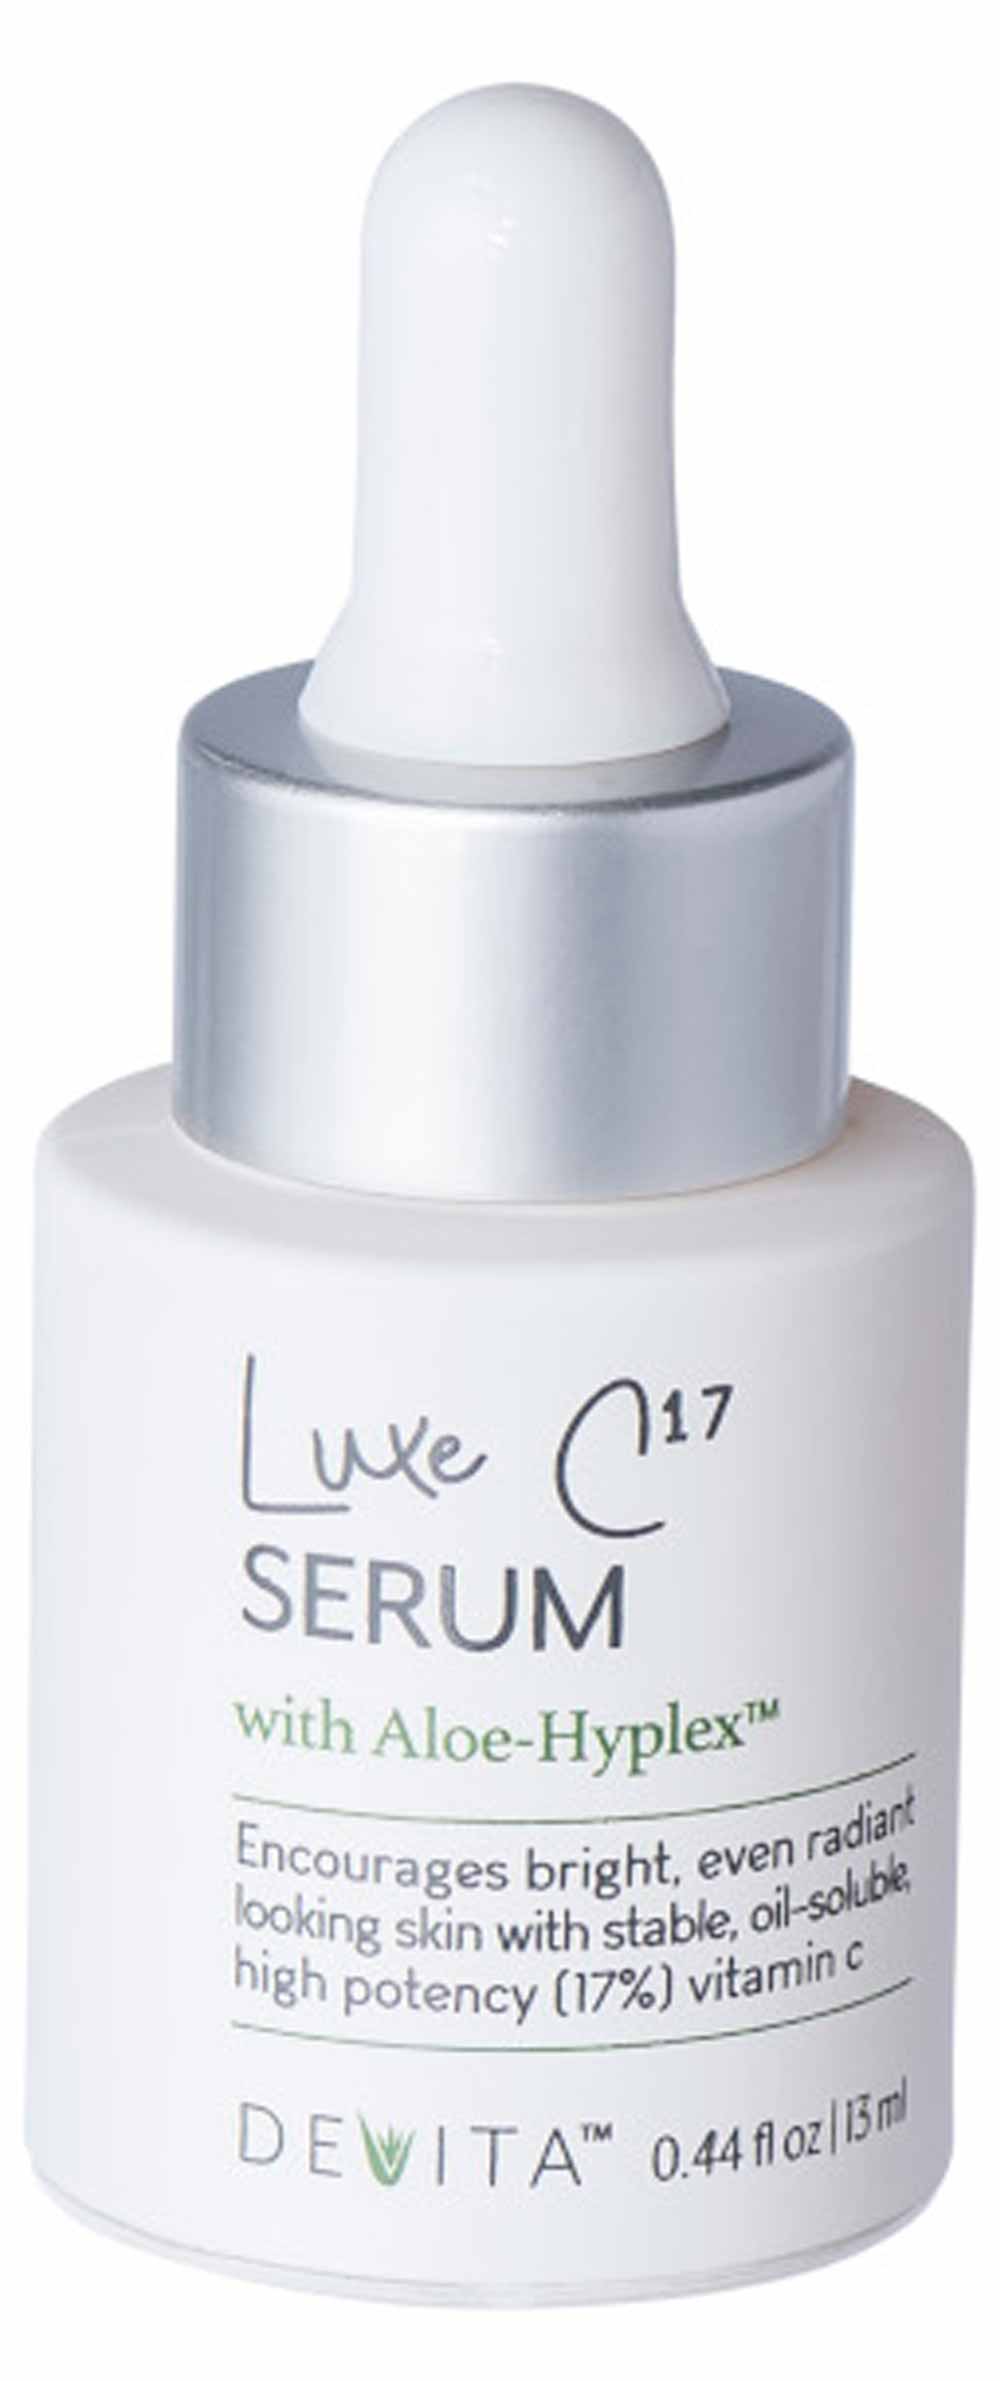 DeVita Skincare Luxe C17 Serum